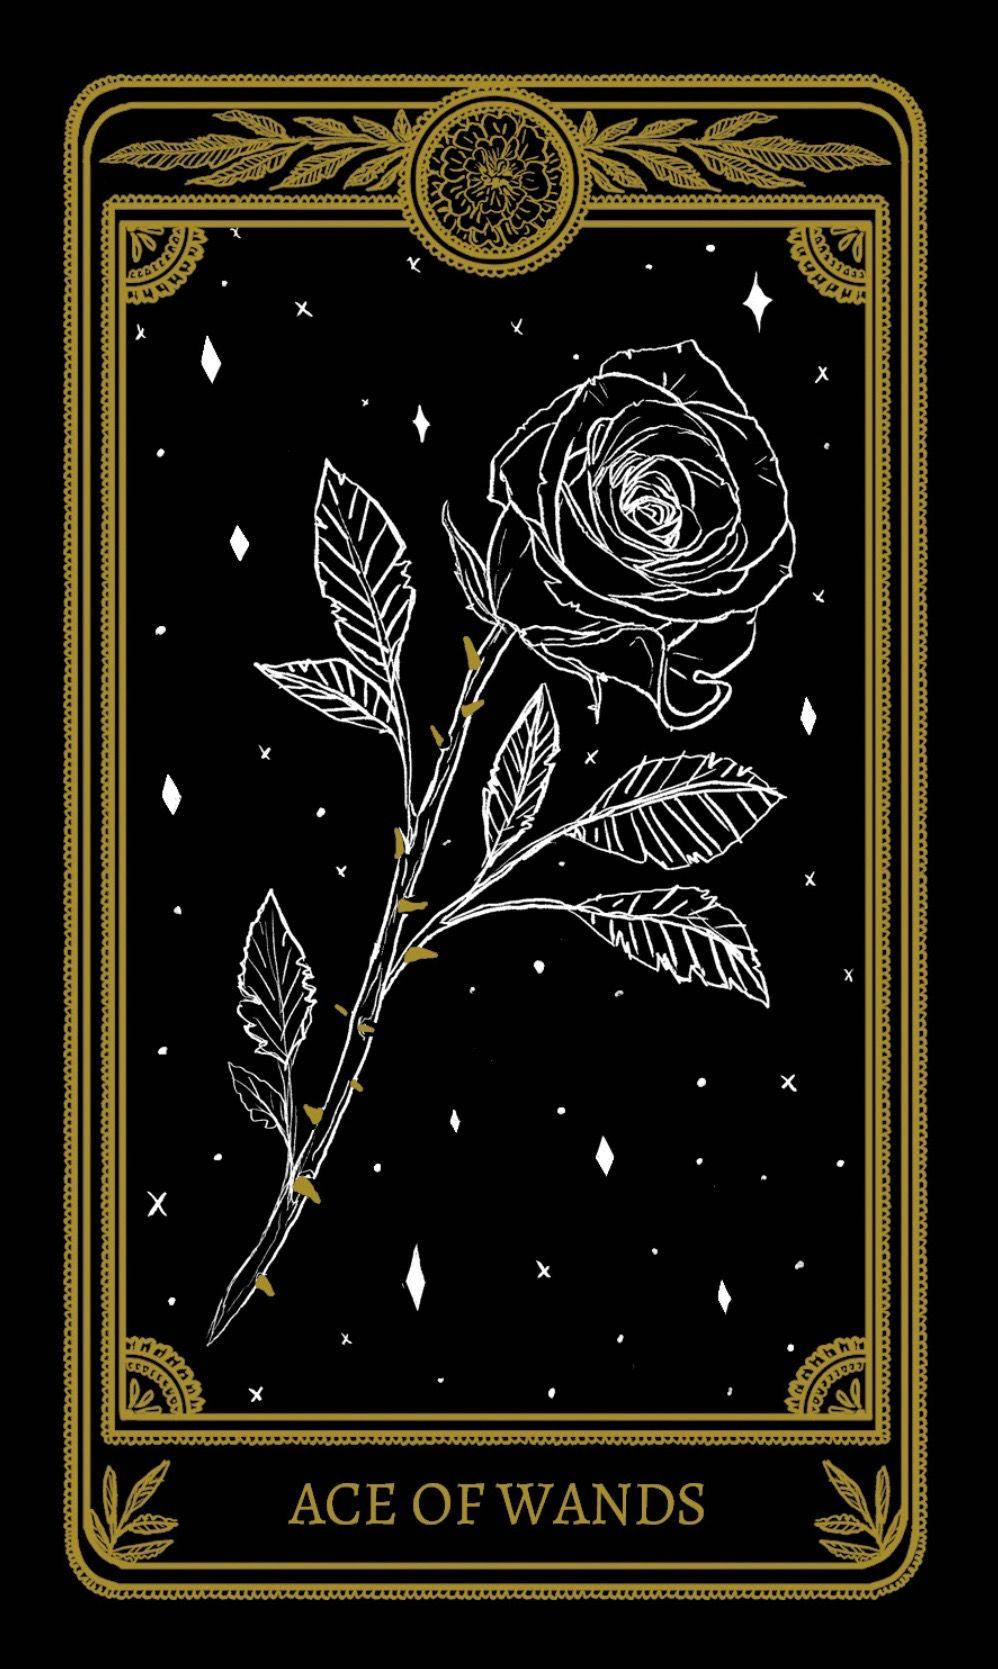 Eineschwarze Und Goldene Tarotkarte Mit Einer Rose Wallpaper